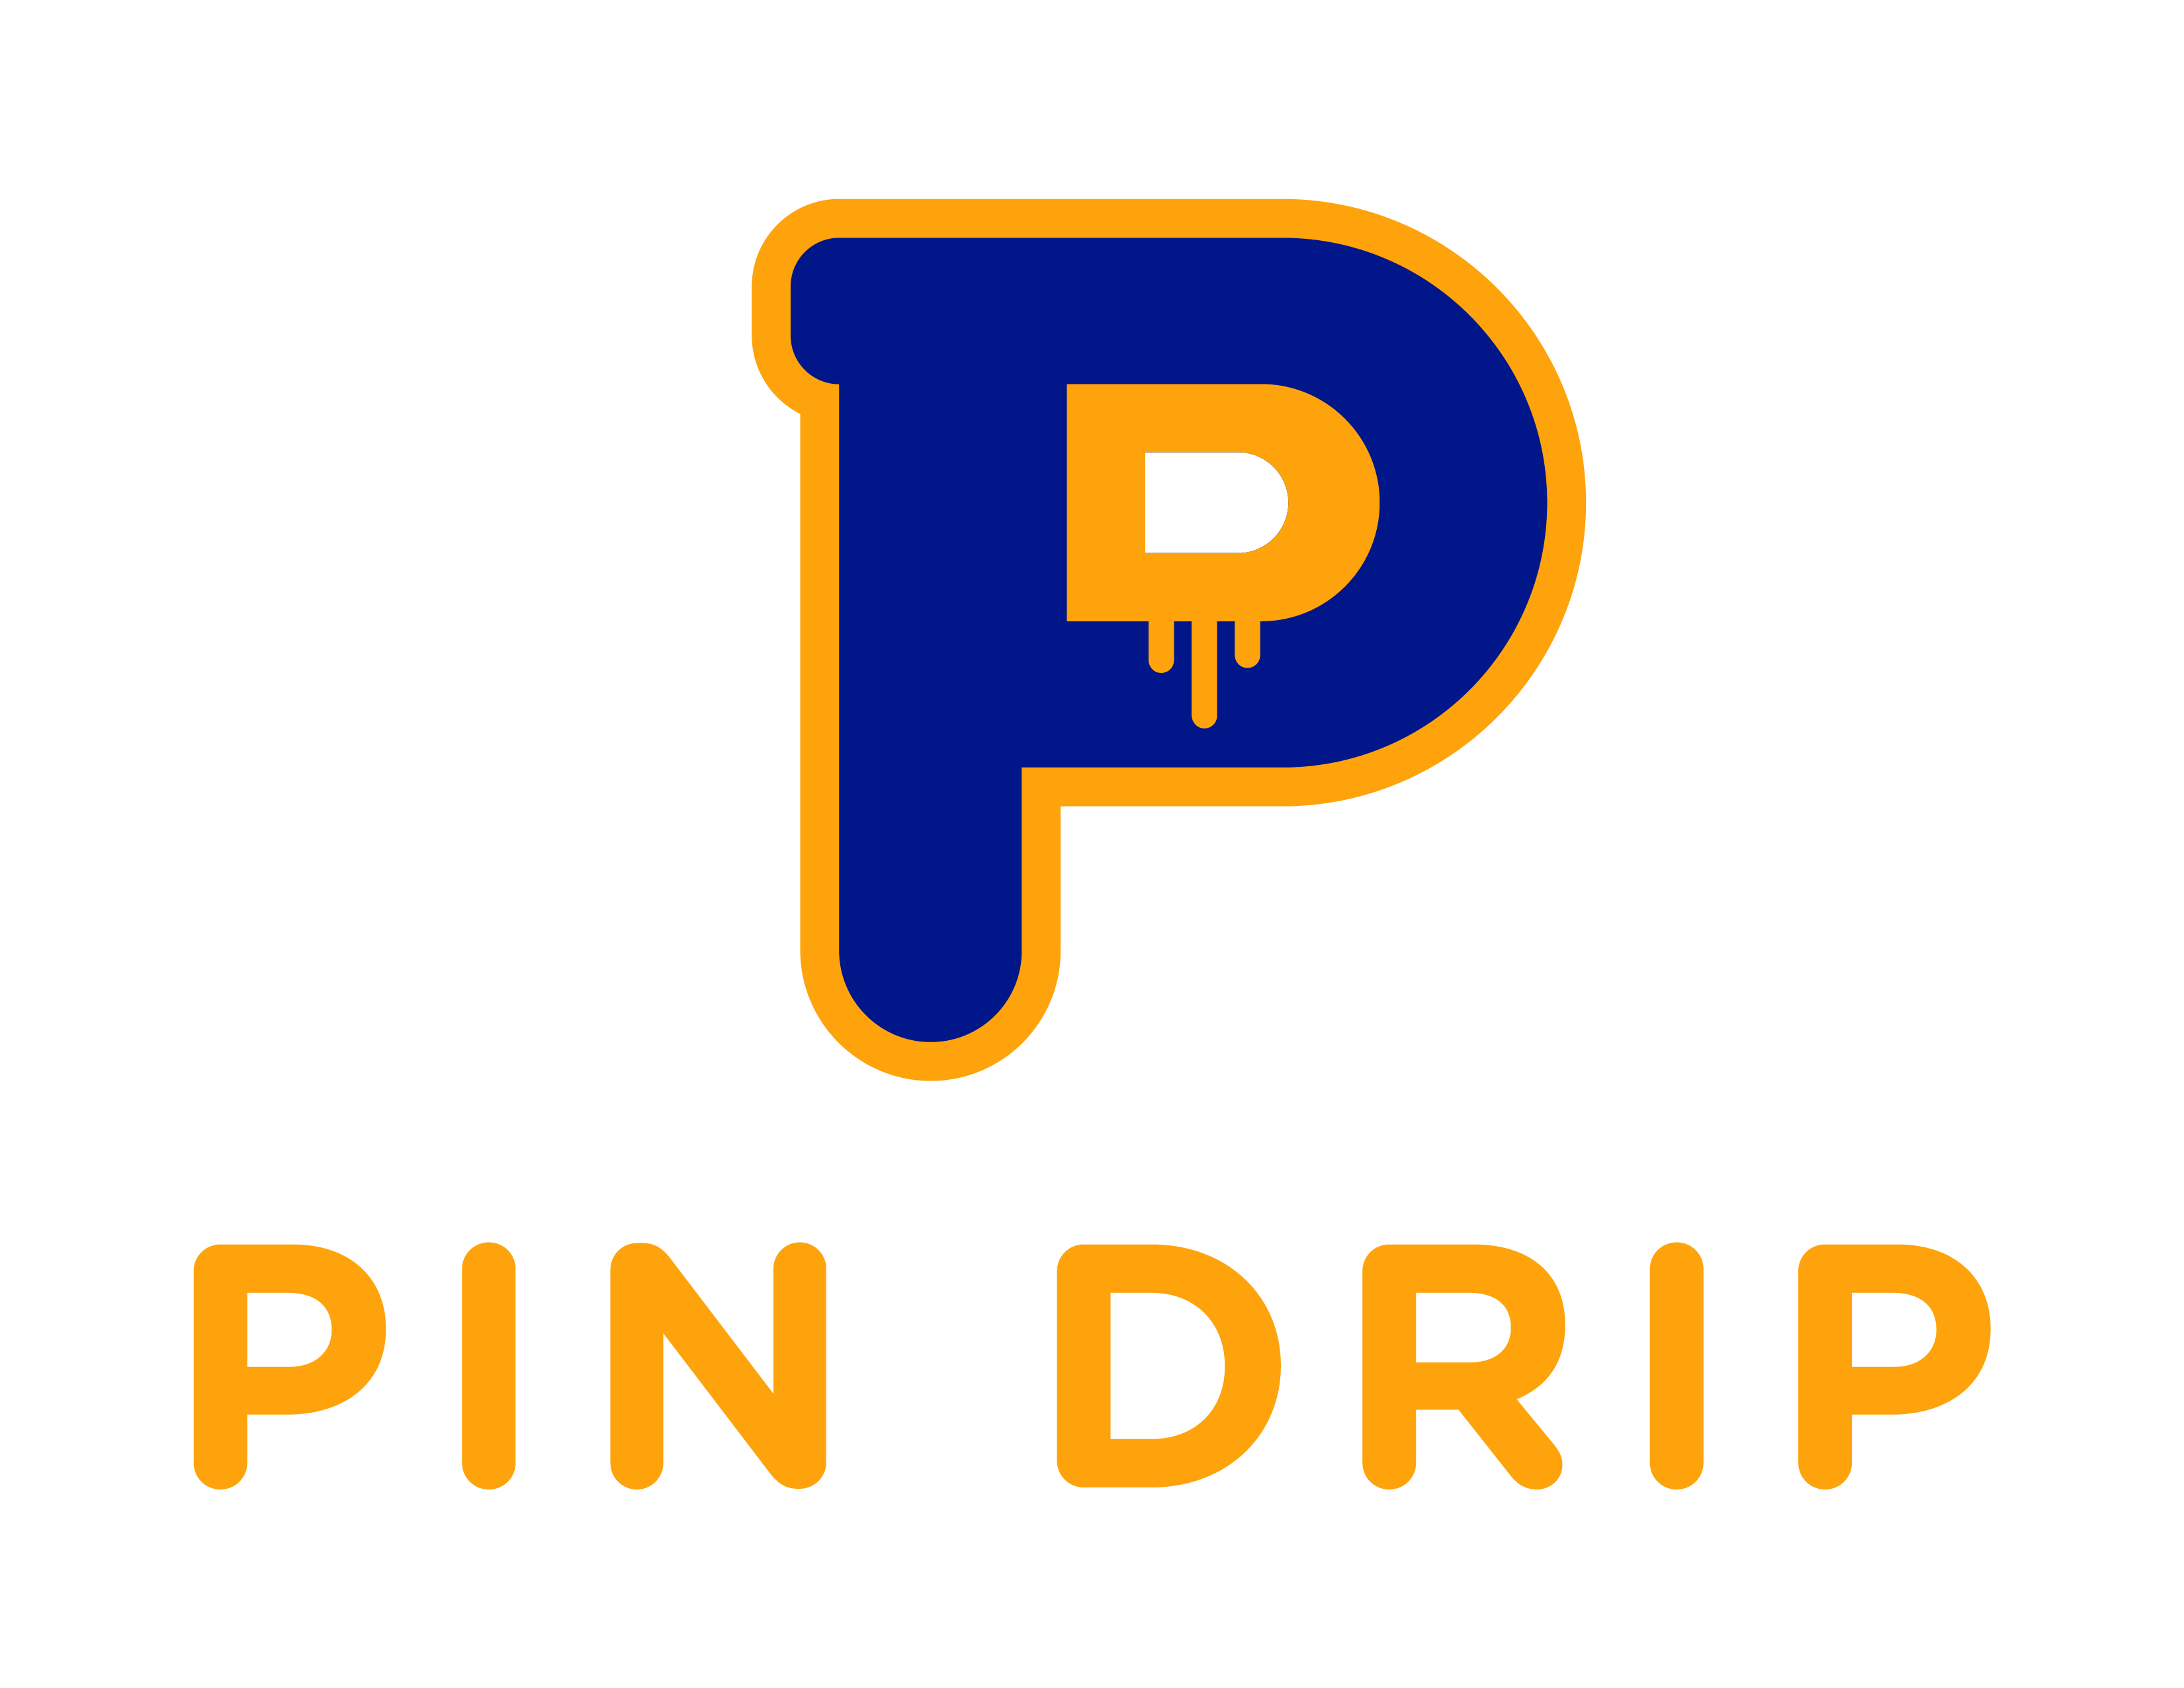 Pin on Drip